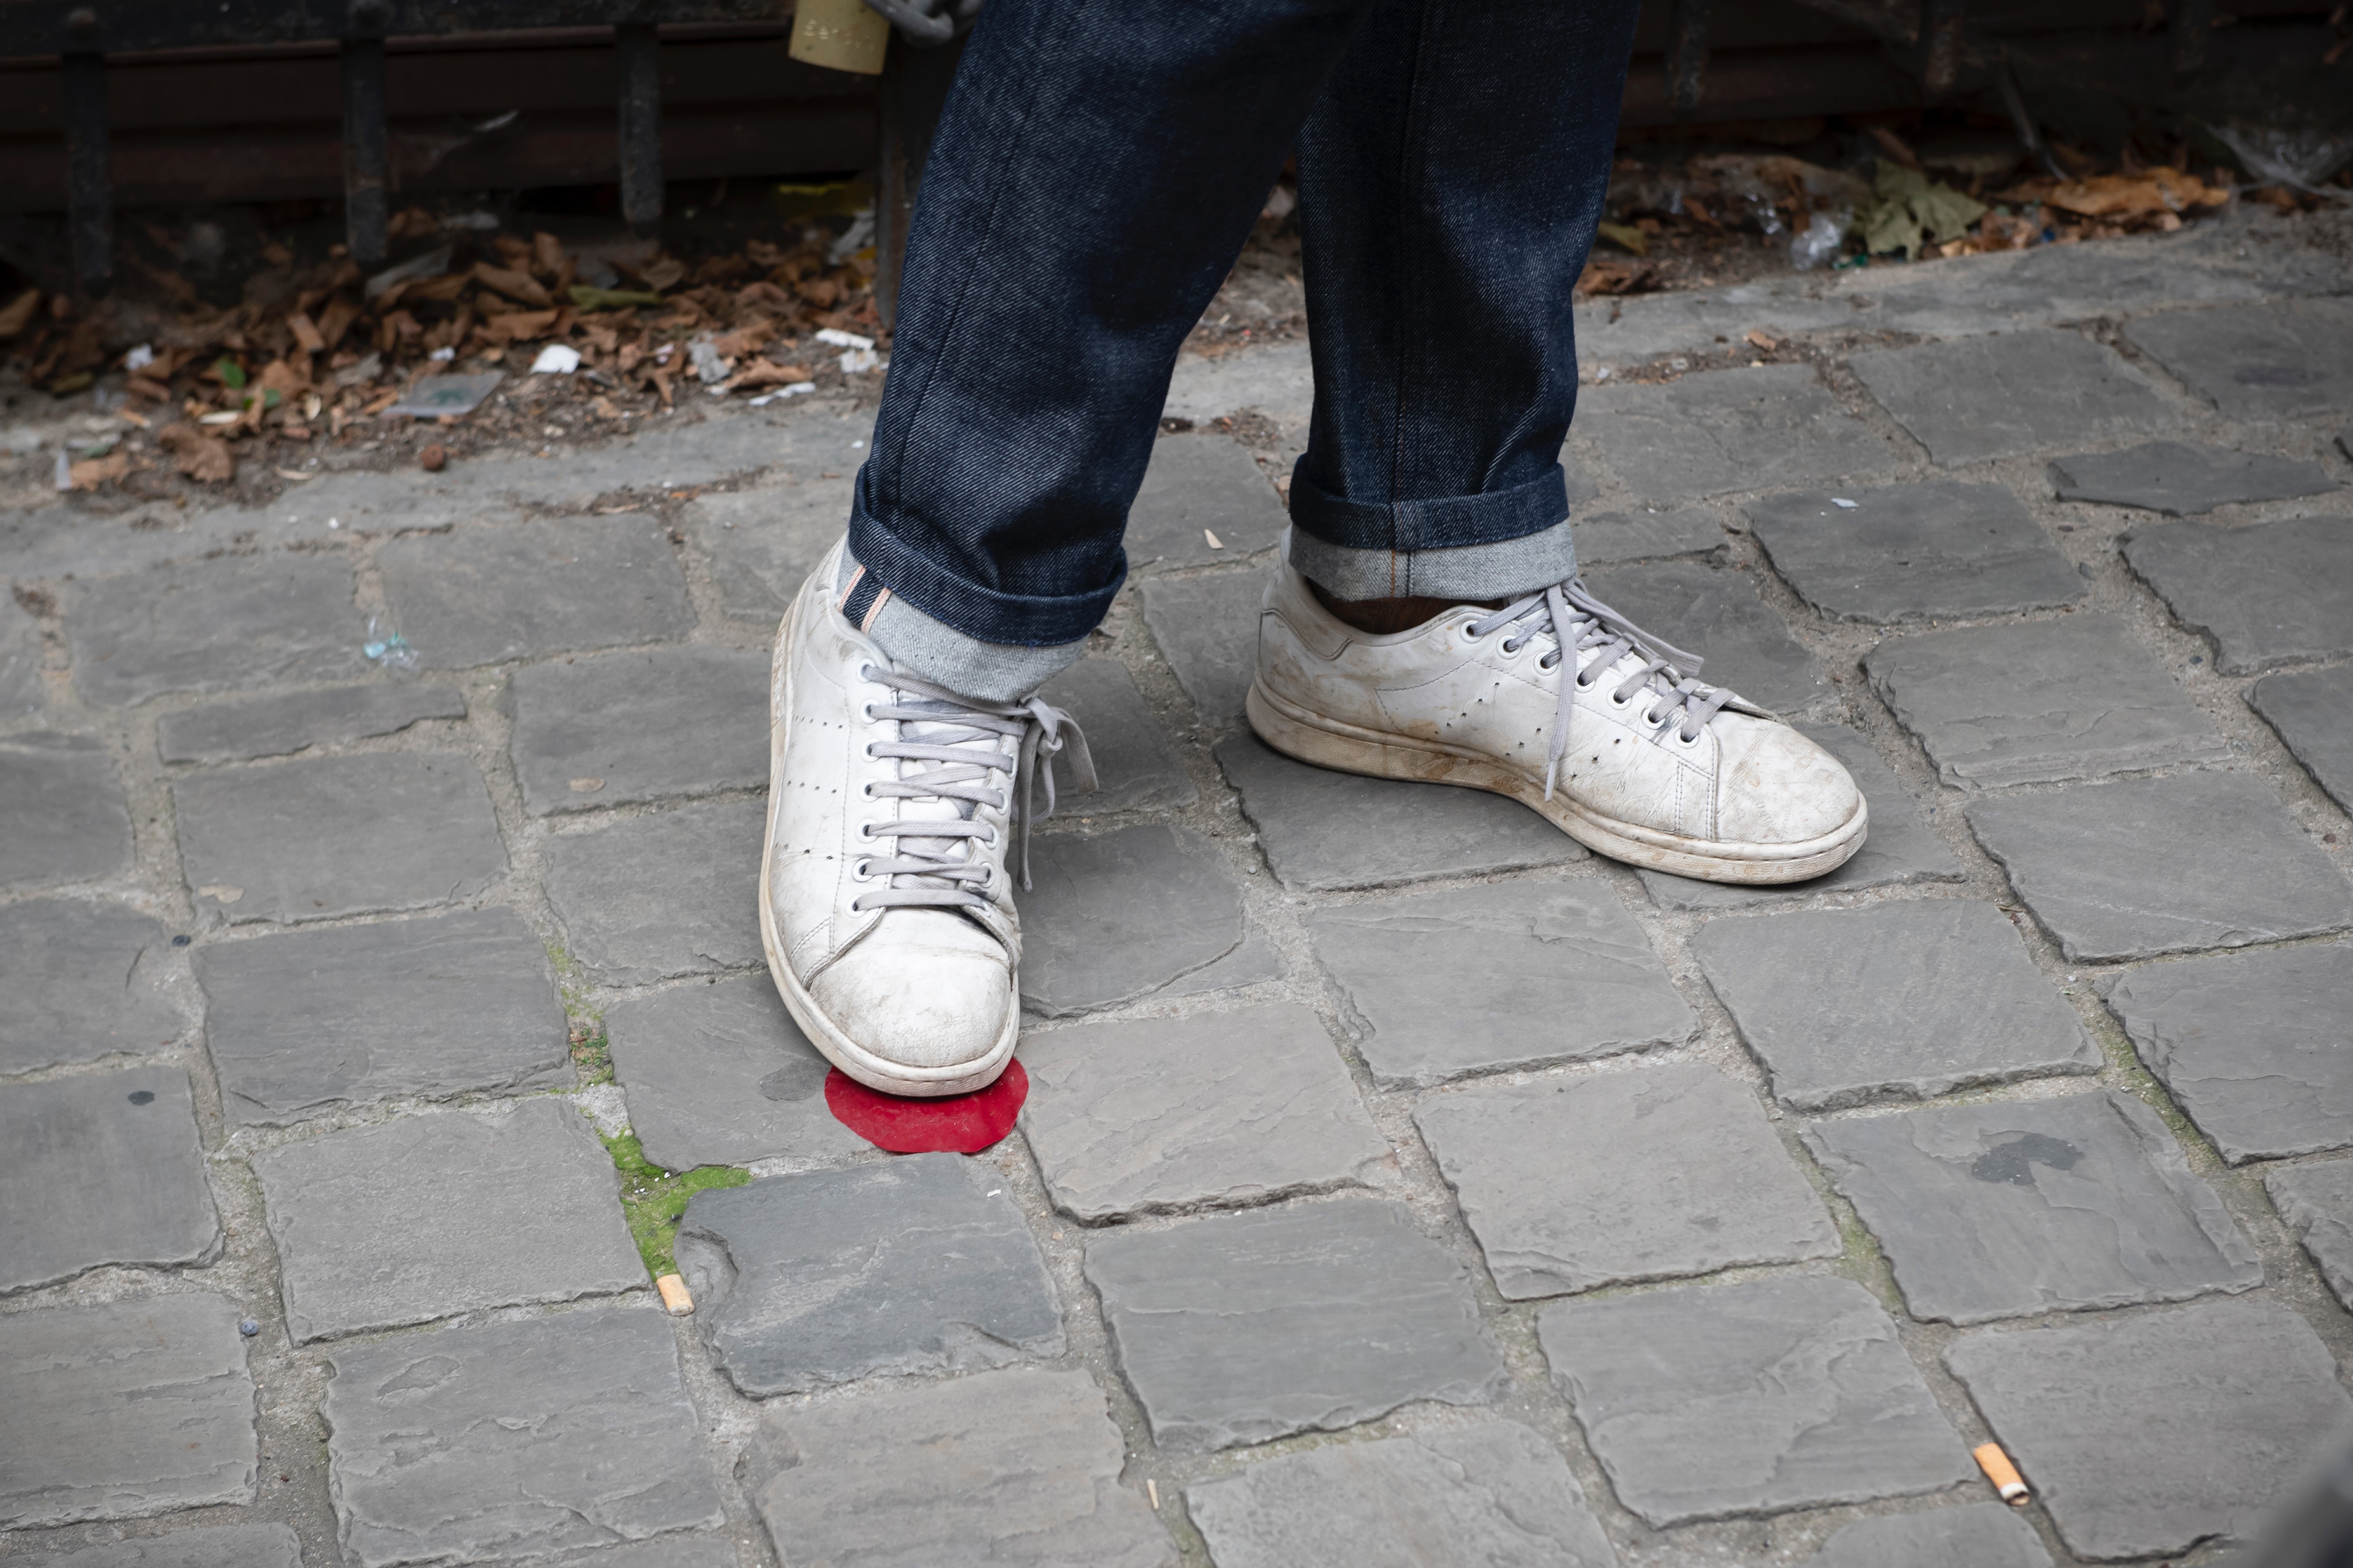 Weisse Schuhe, die auf einem roten Punkt stehen, der auf dem Pflasterstein angebracht ist.